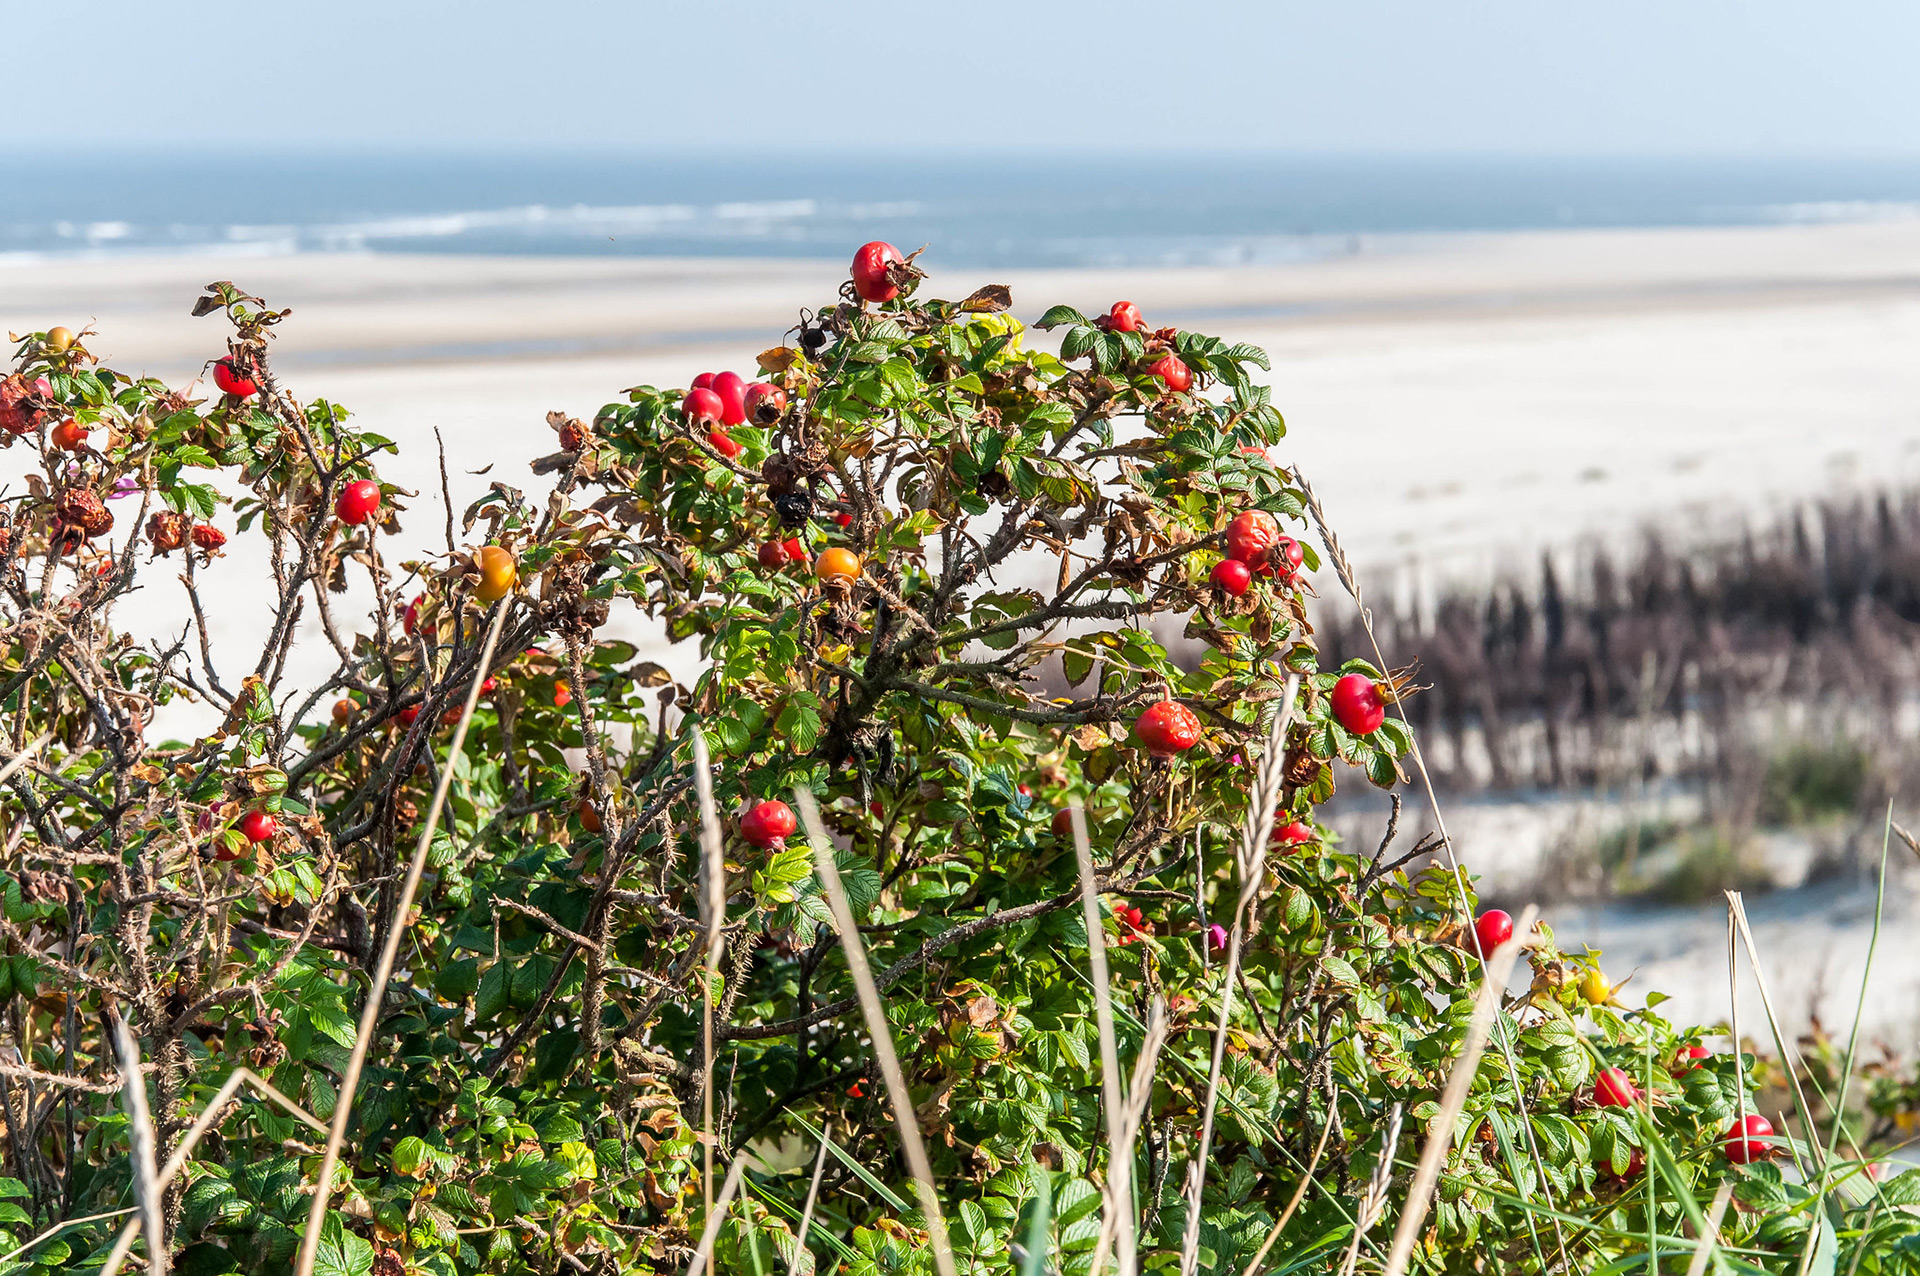 Ein Hagebuttenstrauch am Strand. Die Früchte sind rot und reif. Im Hintergrund sieht man das Meer.